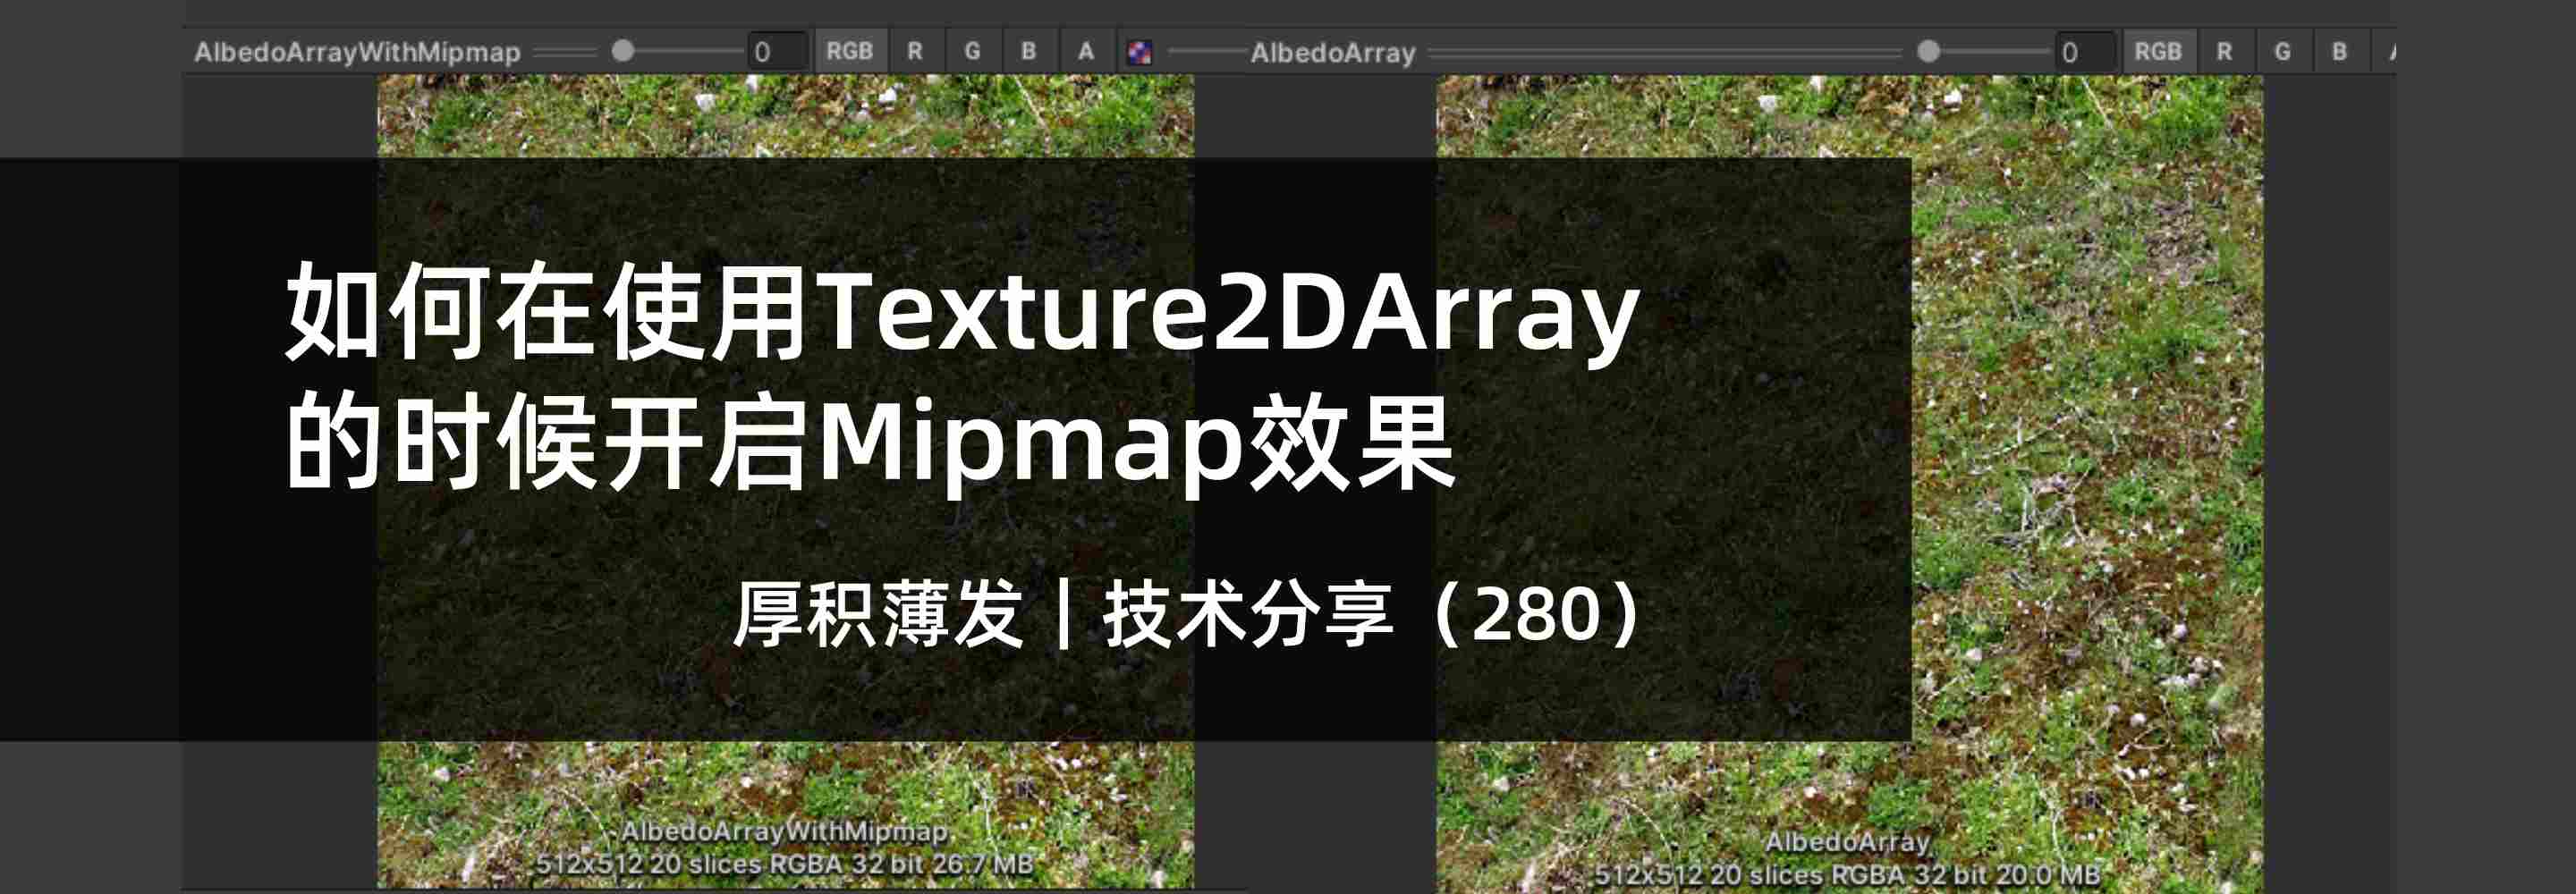 如何在使用Texture2DArray的时候开启Mipmap效果